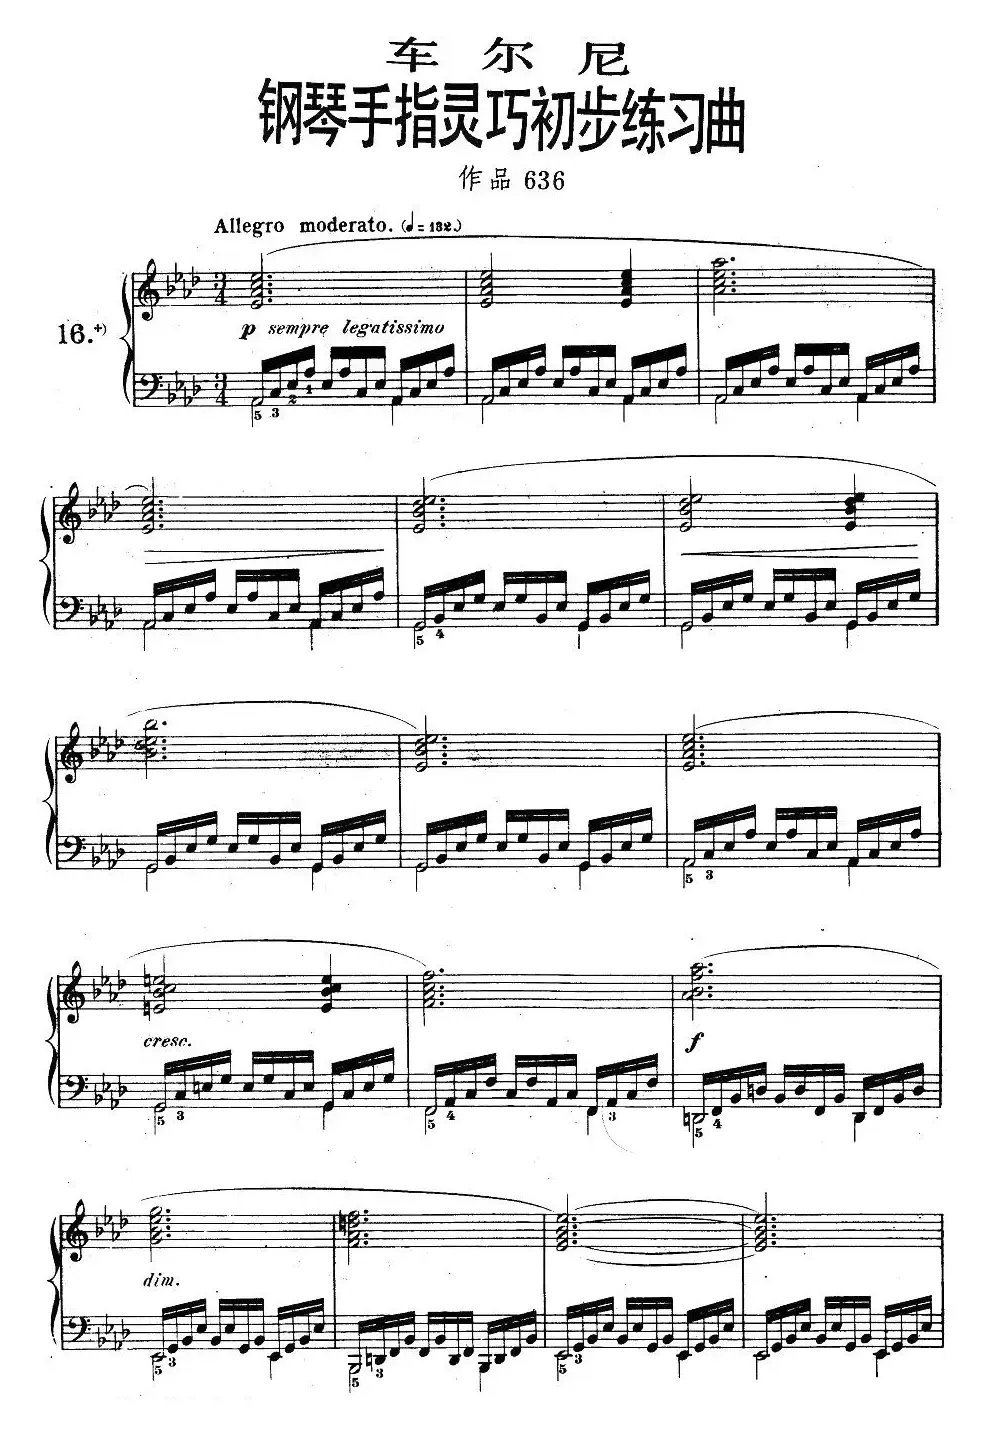 《车尔尼钢琴手指灵巧初步练习曲》OP.636-16